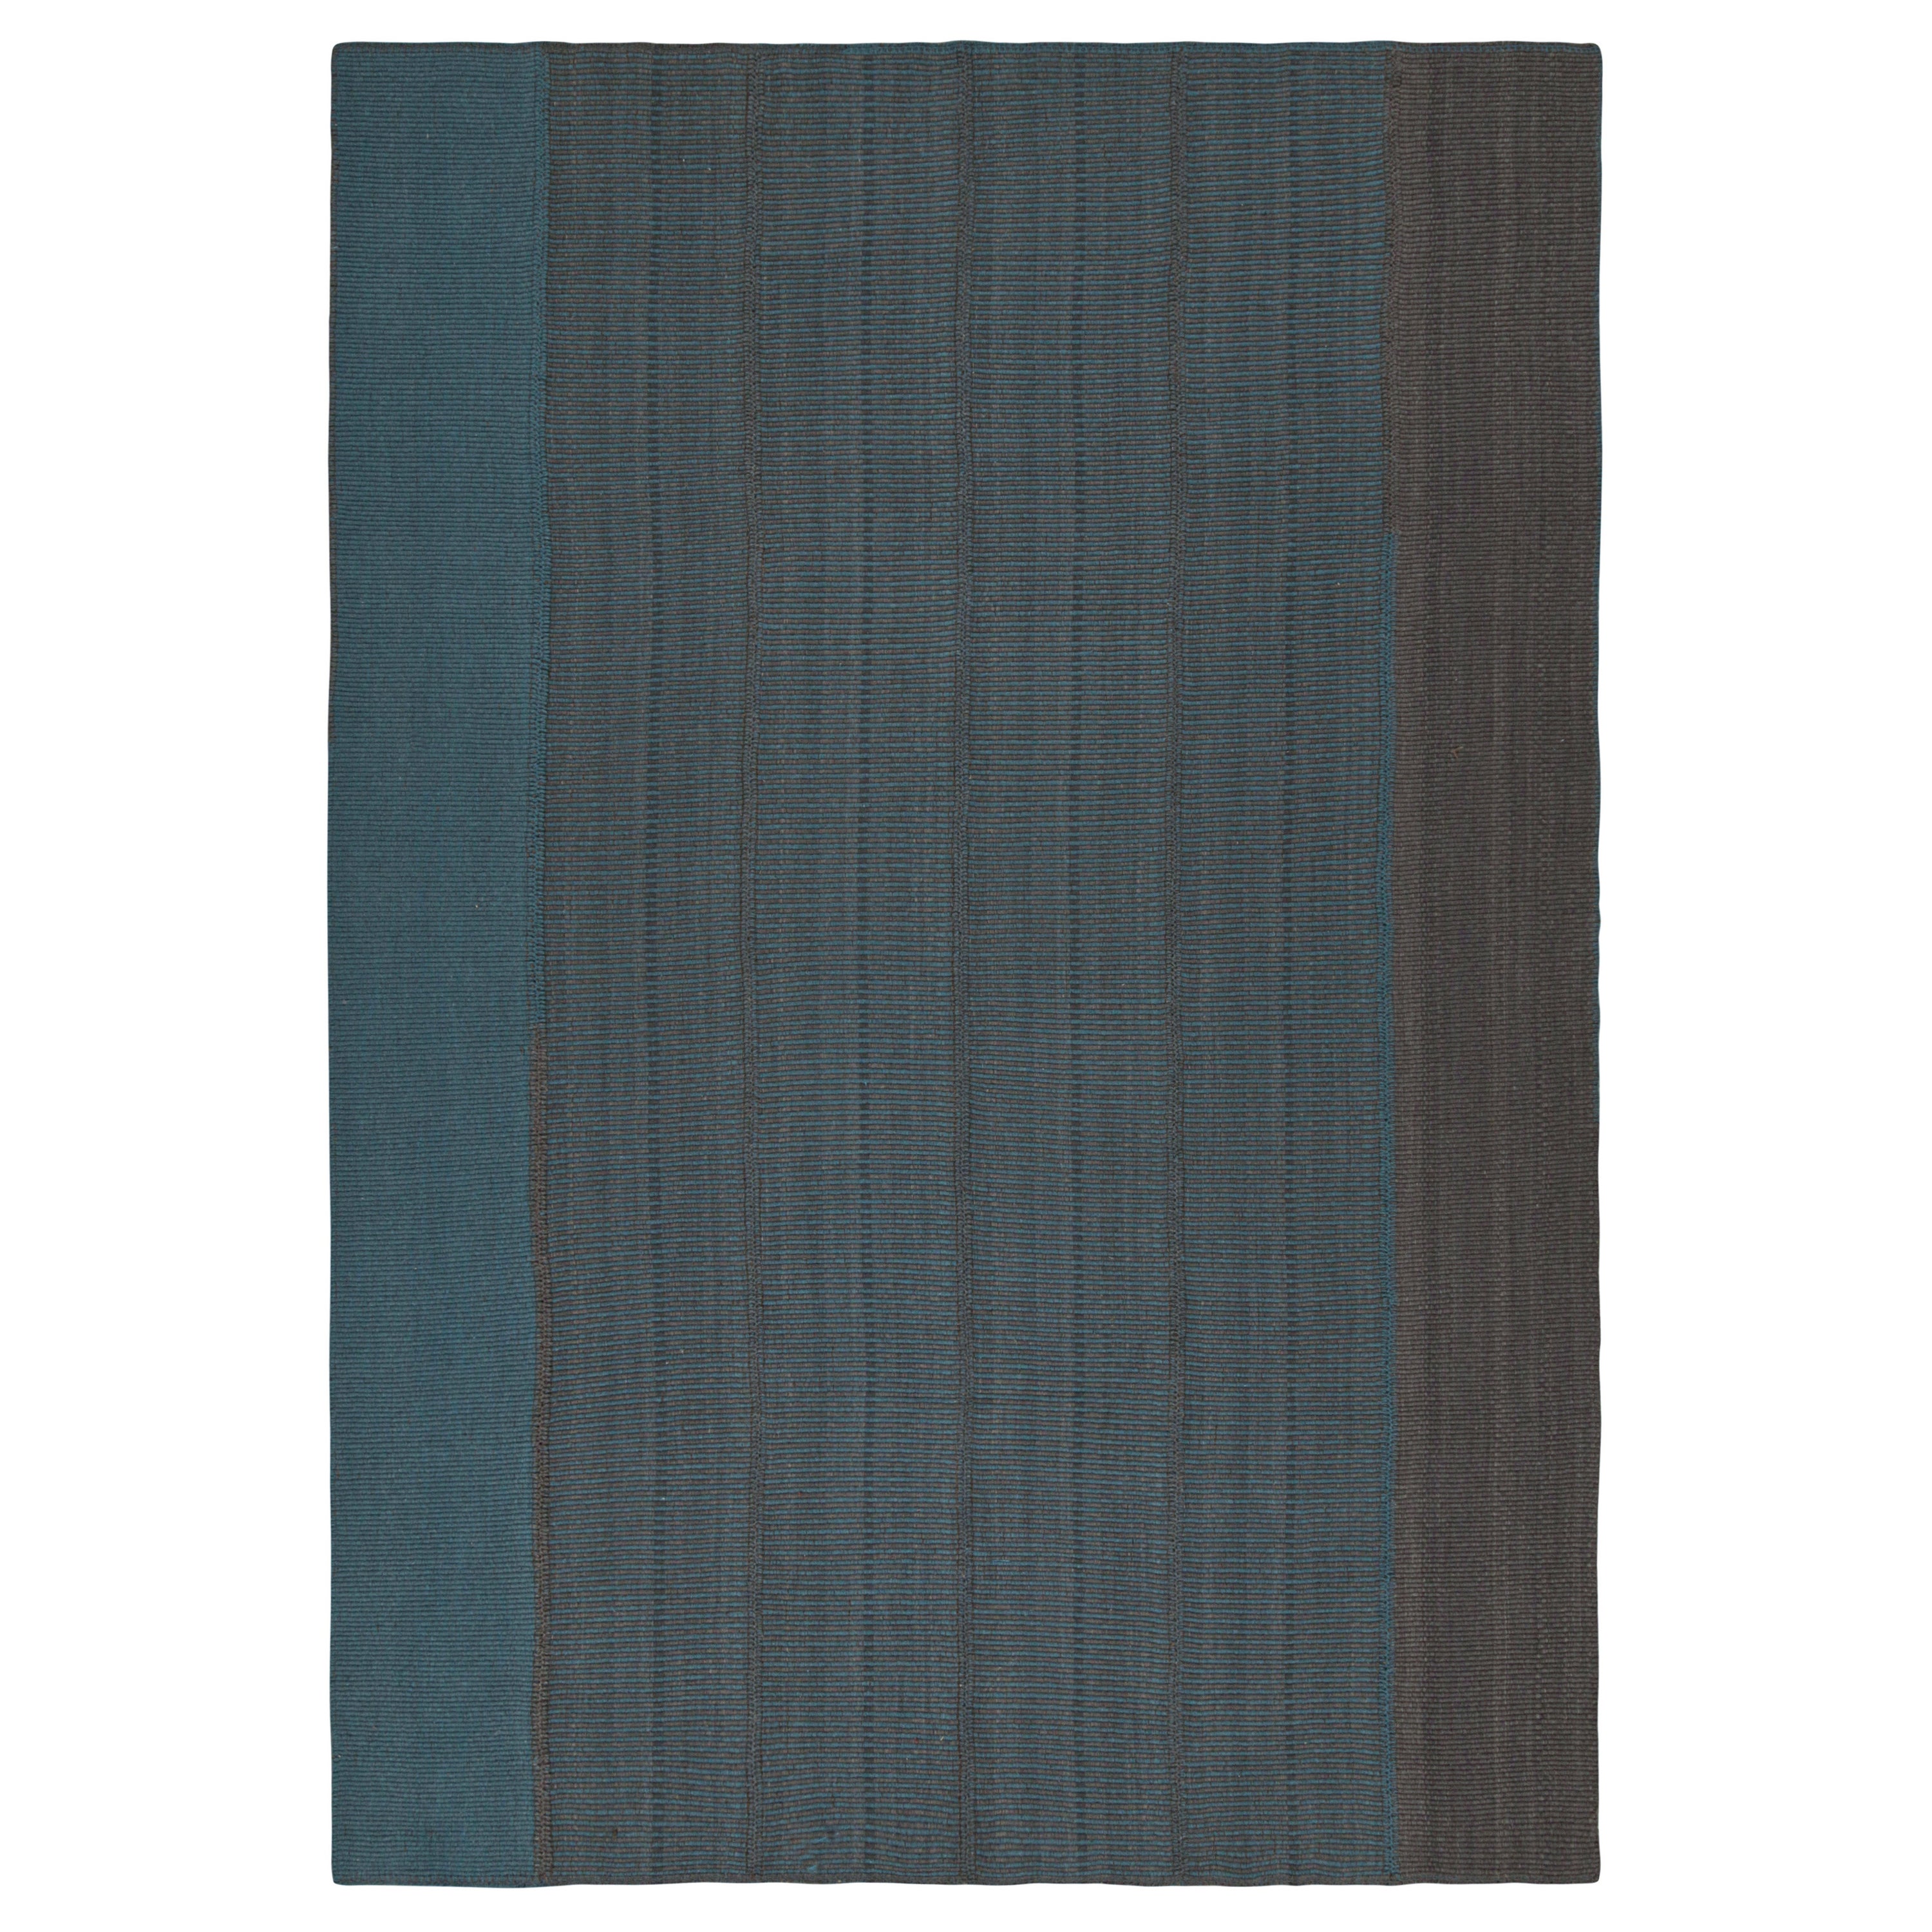 Rug & Kilim's Contemporary Kilim in Blue with Gray Stripes and Brown Accents (Kilim contemporain en bleu avec des rayures grises et des accents bruns) en vente